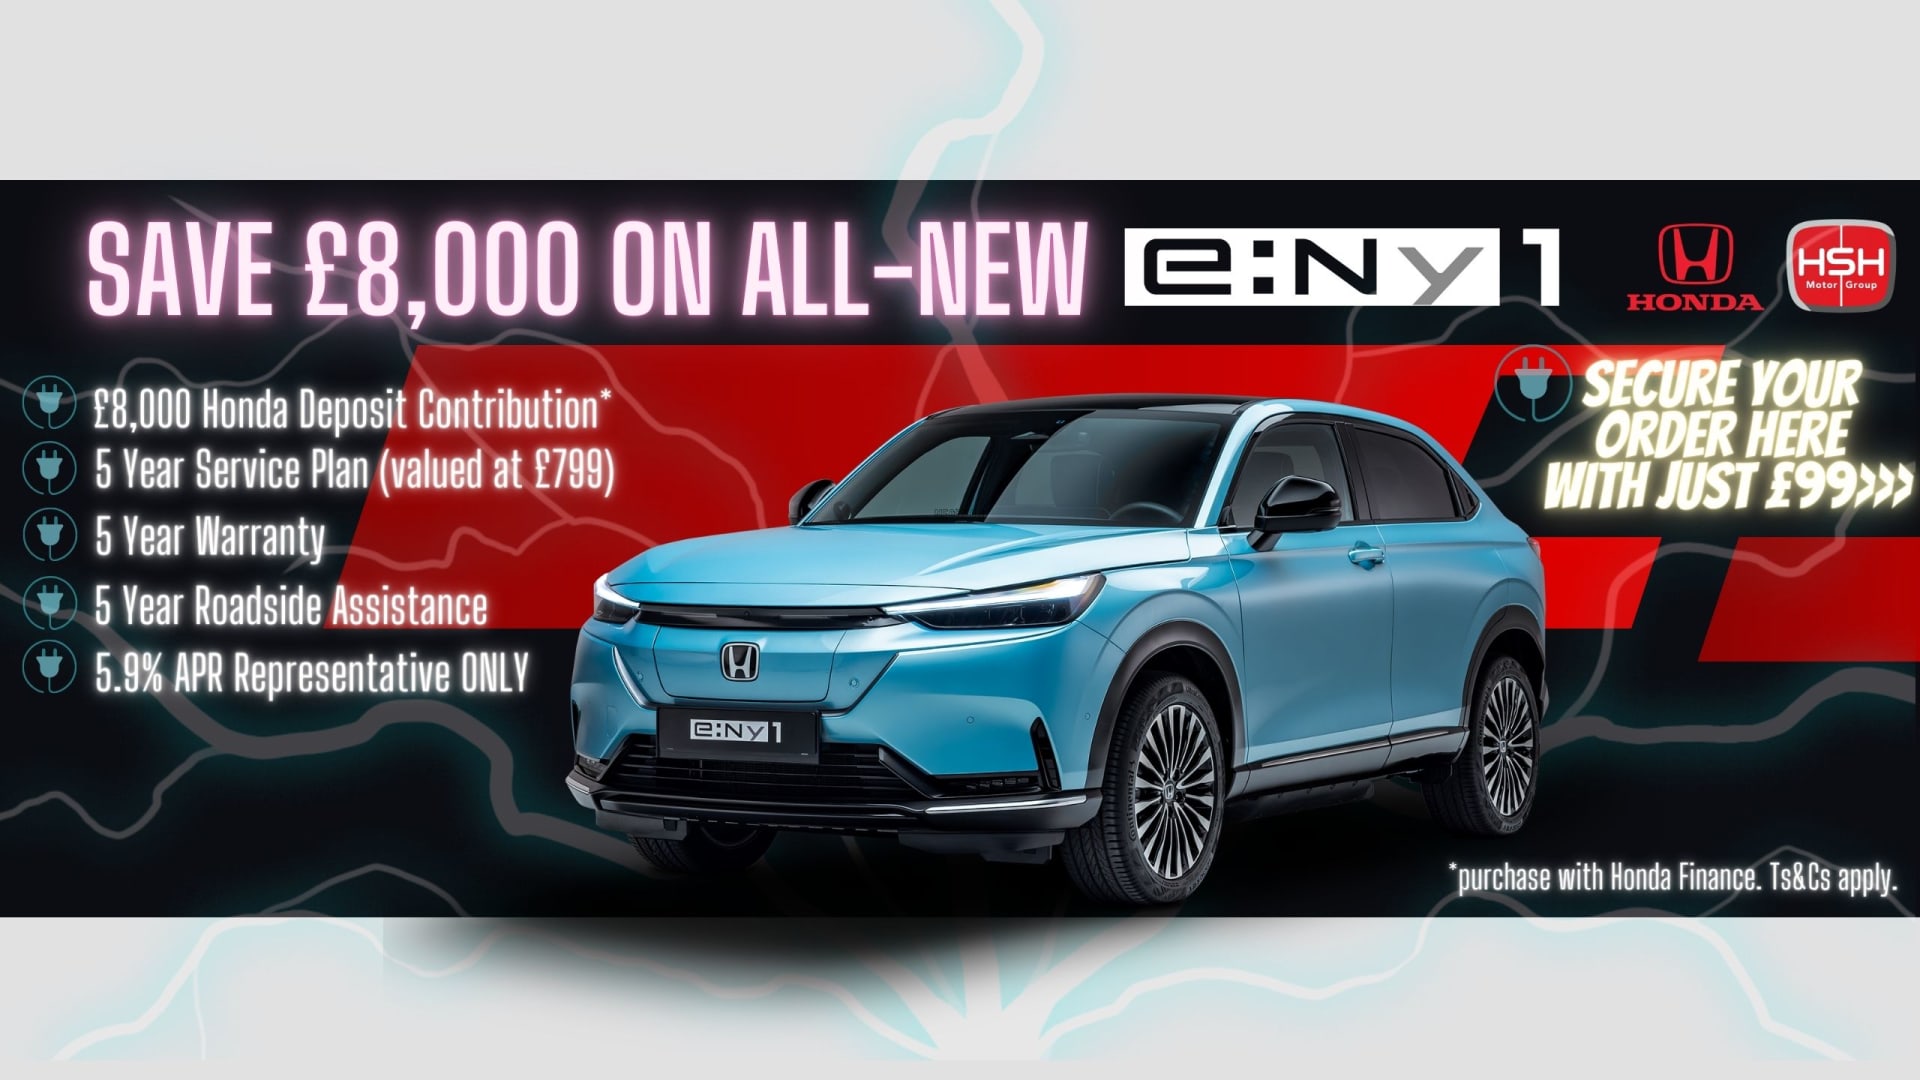 Save £8,000 on all-New Honda e:Ny1